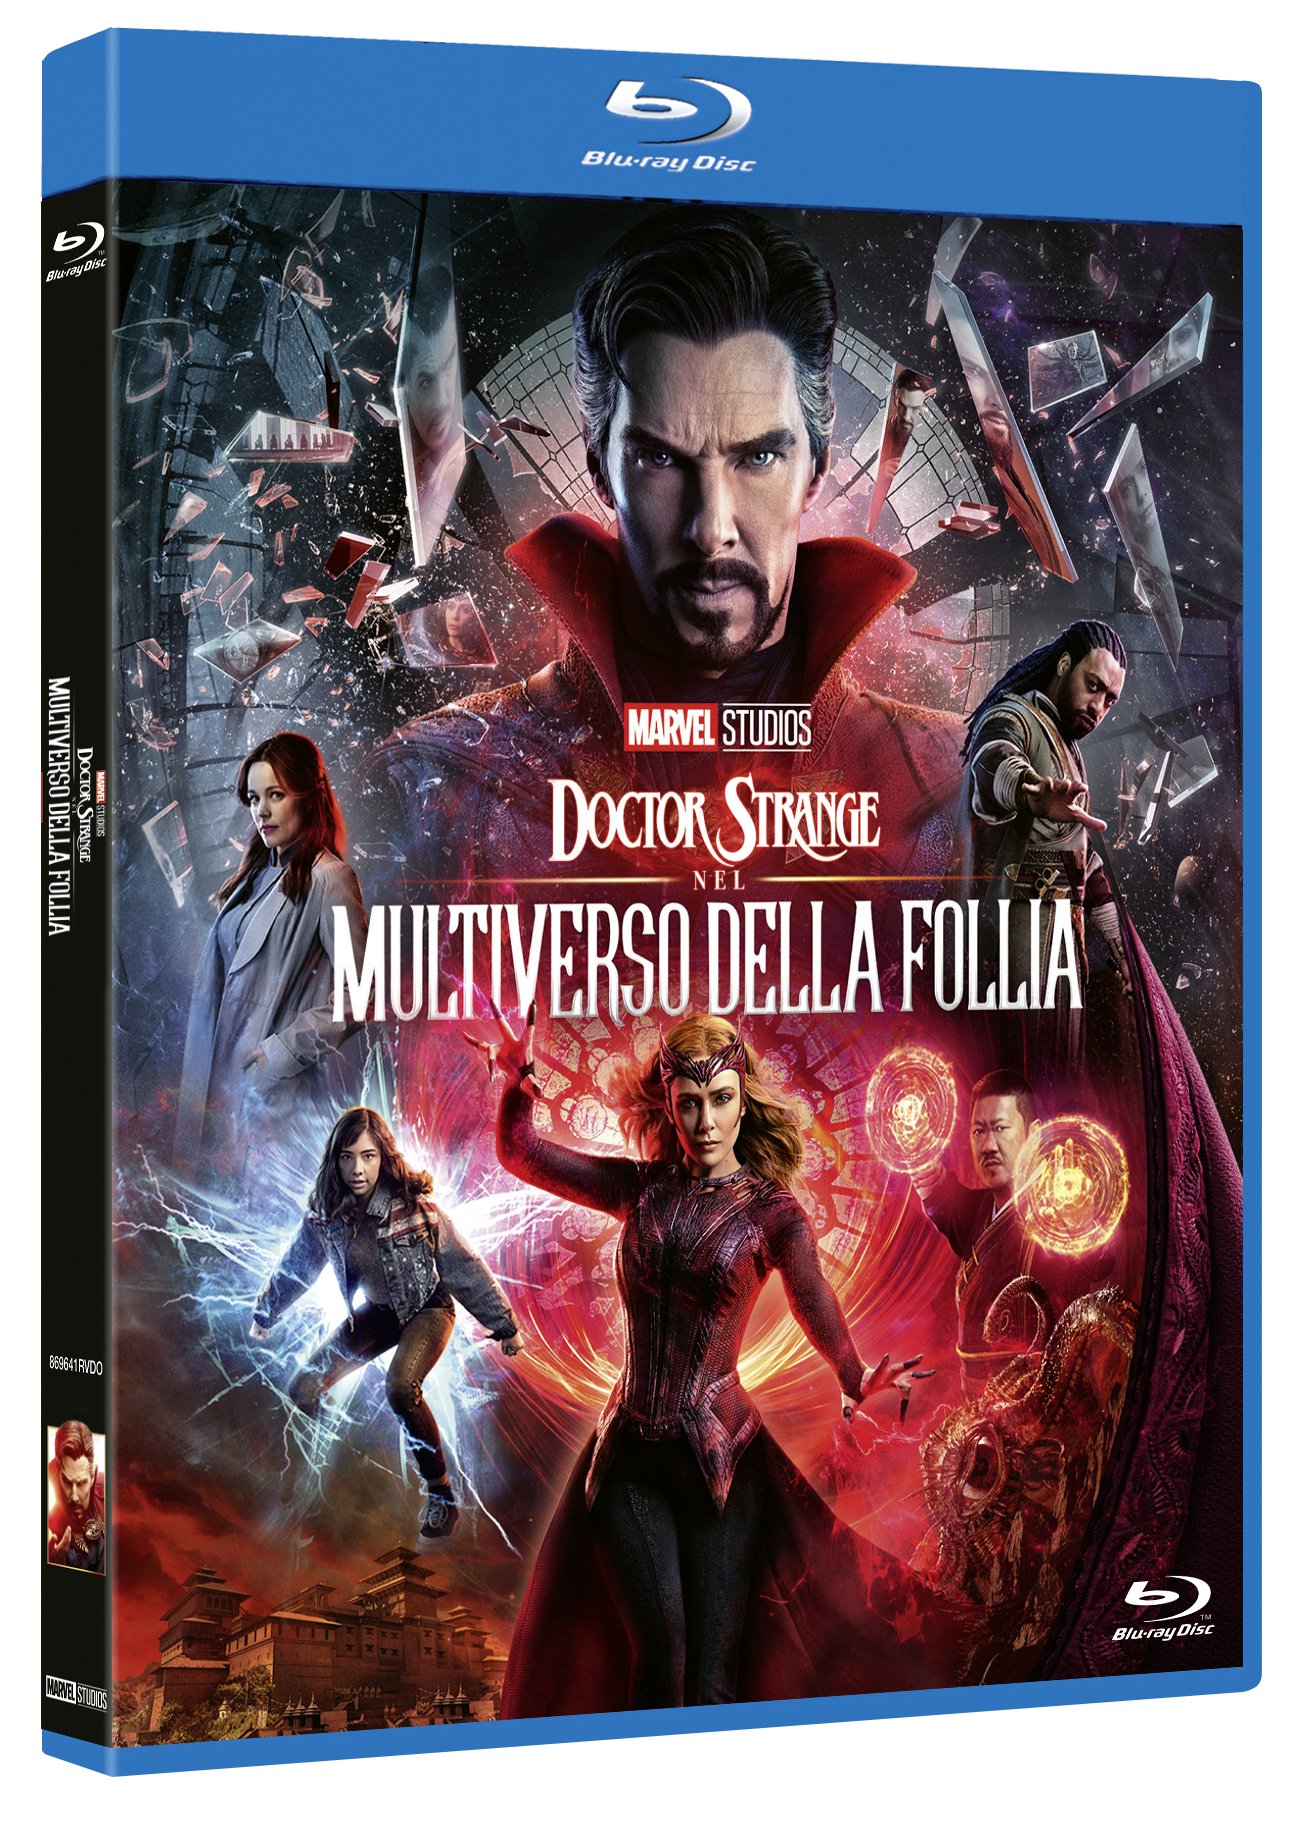 Doctor Strange Nel multiverso della follia Blu-ray